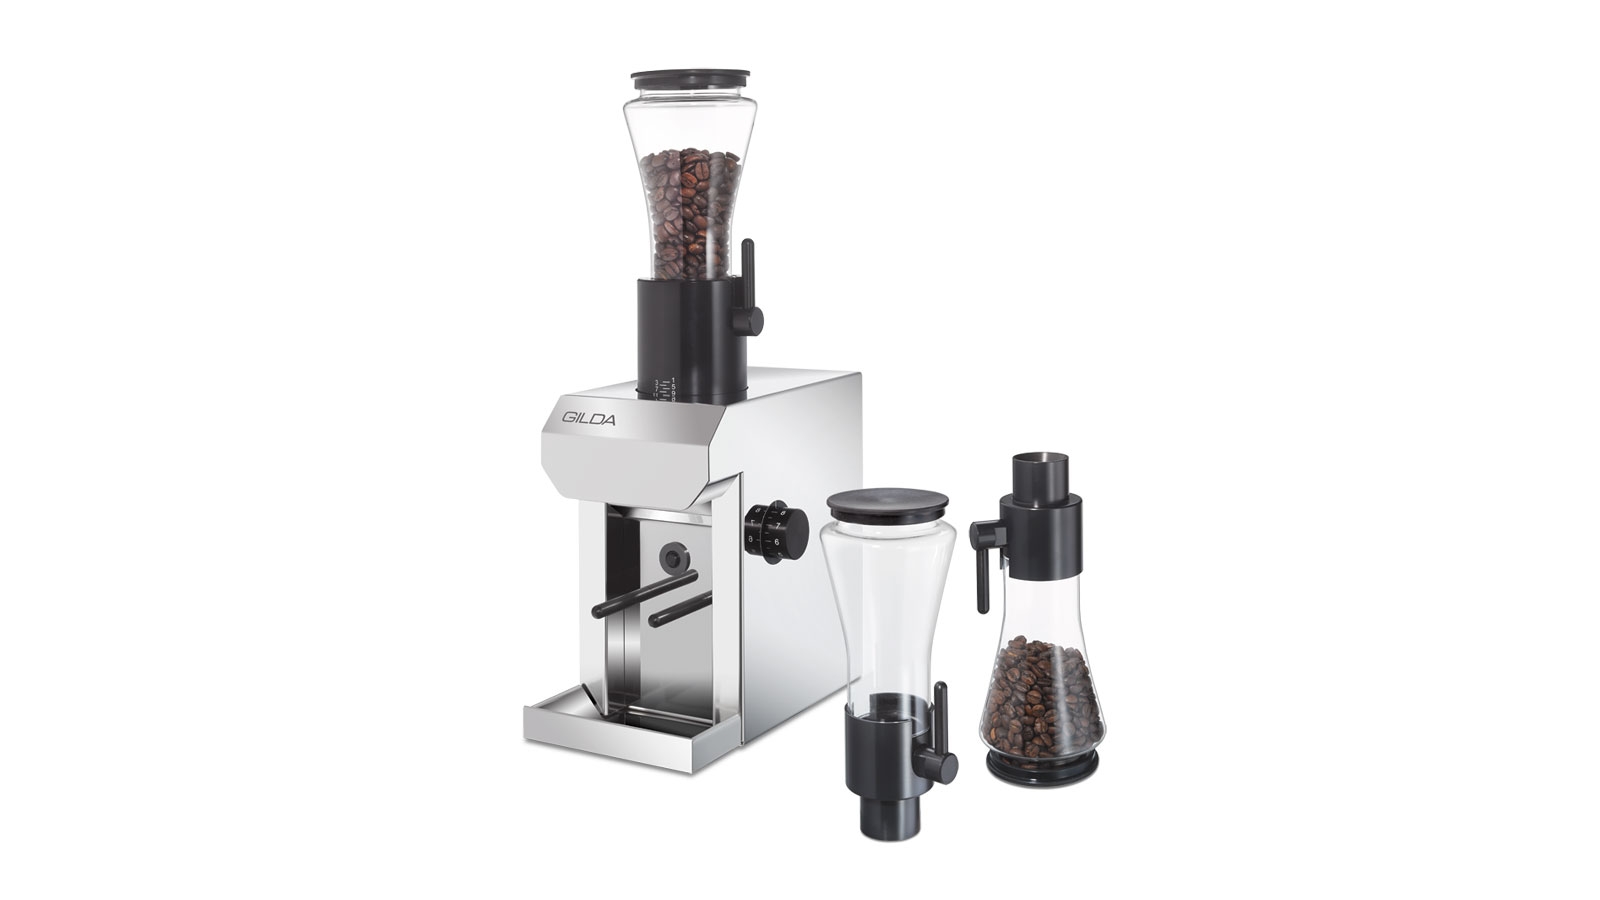 Coffee grinder made in Switzerland by GILDA